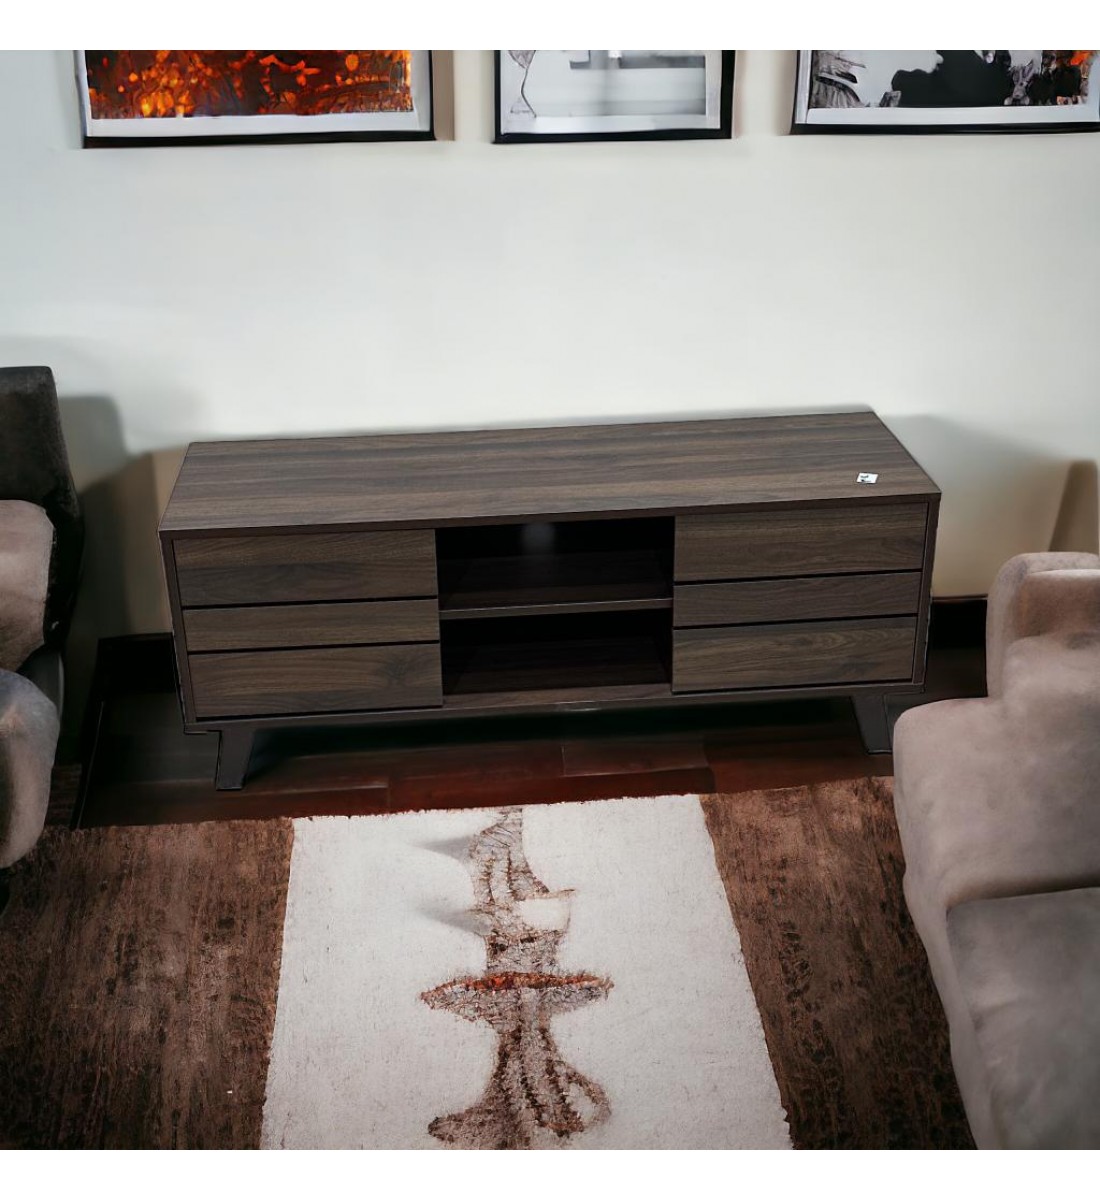  طاولة شاشة بلازما خشب ديكور تصميم انيق وعصري بني محروق 120×40×47سم